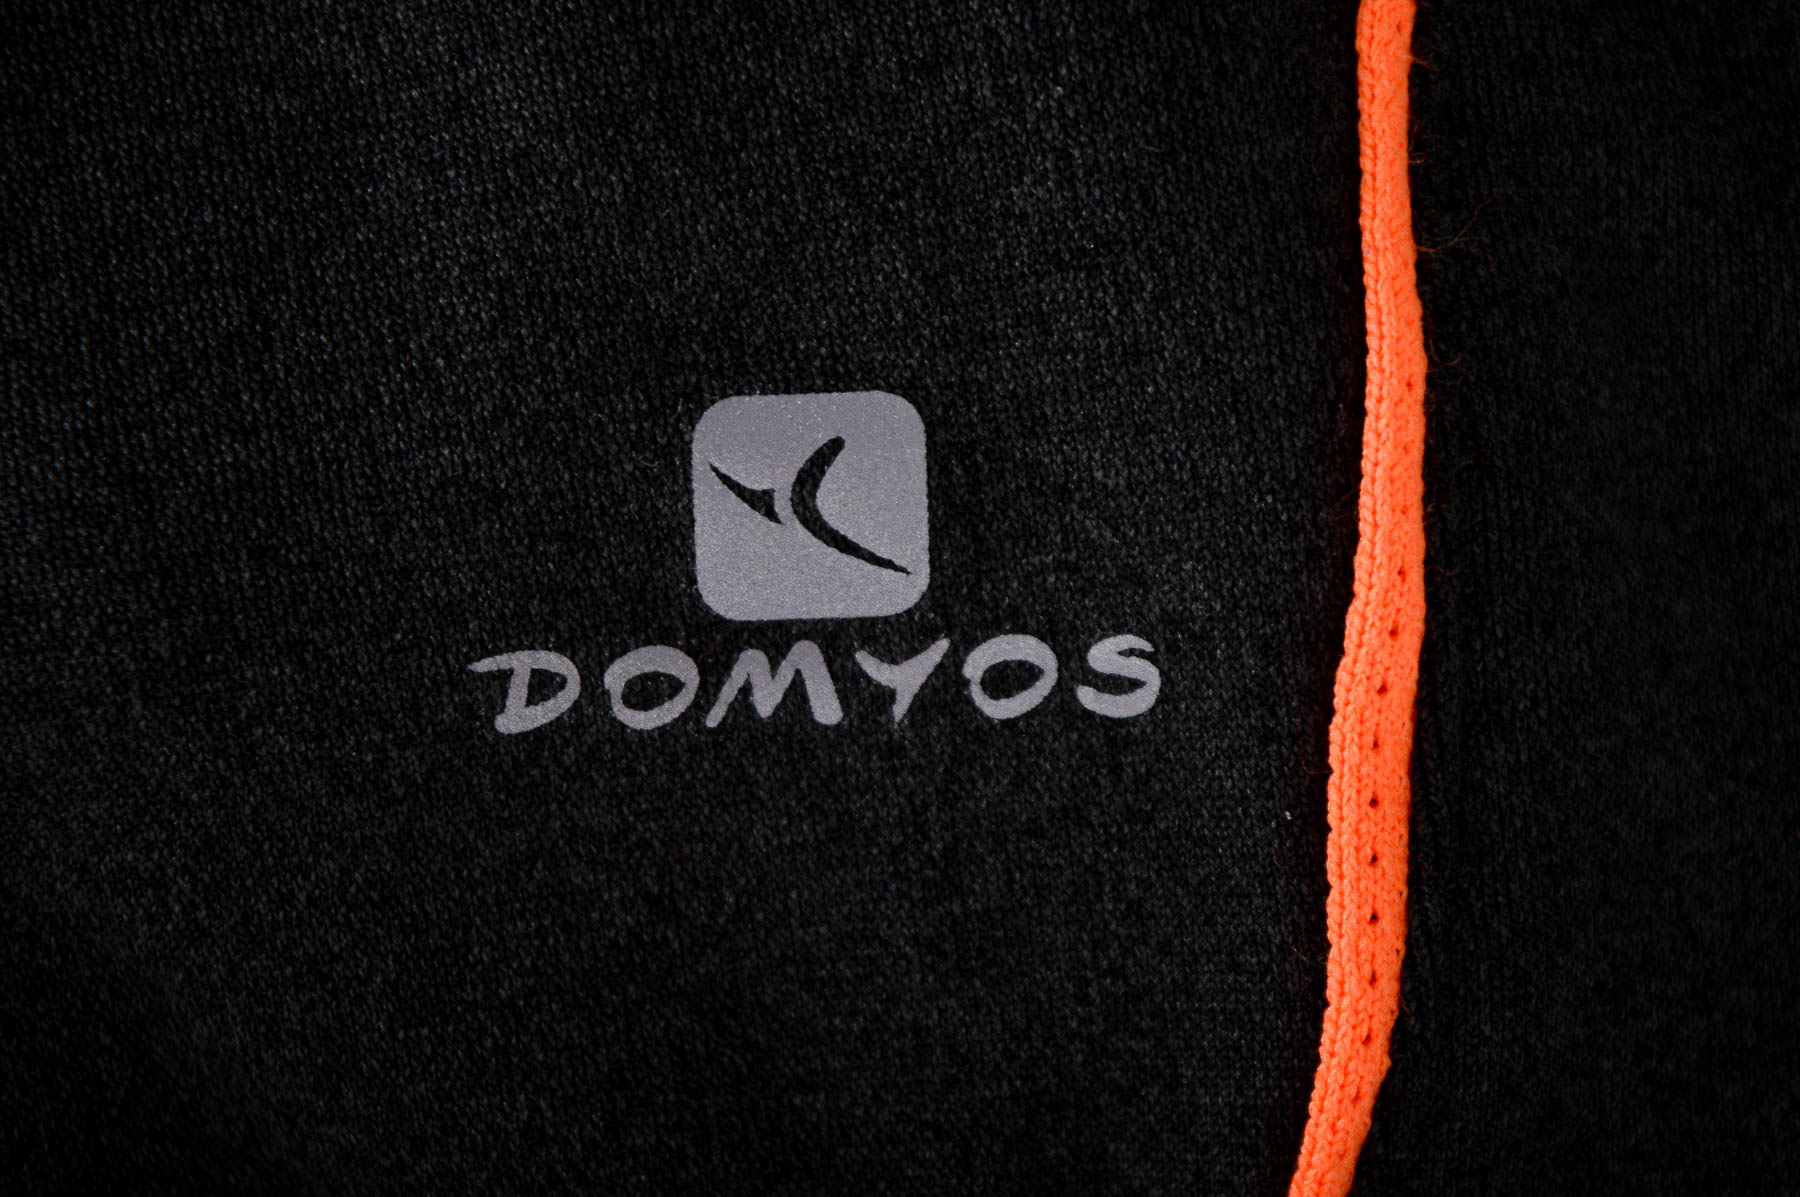 Krótkie spodnie damskie - Domyos - 2